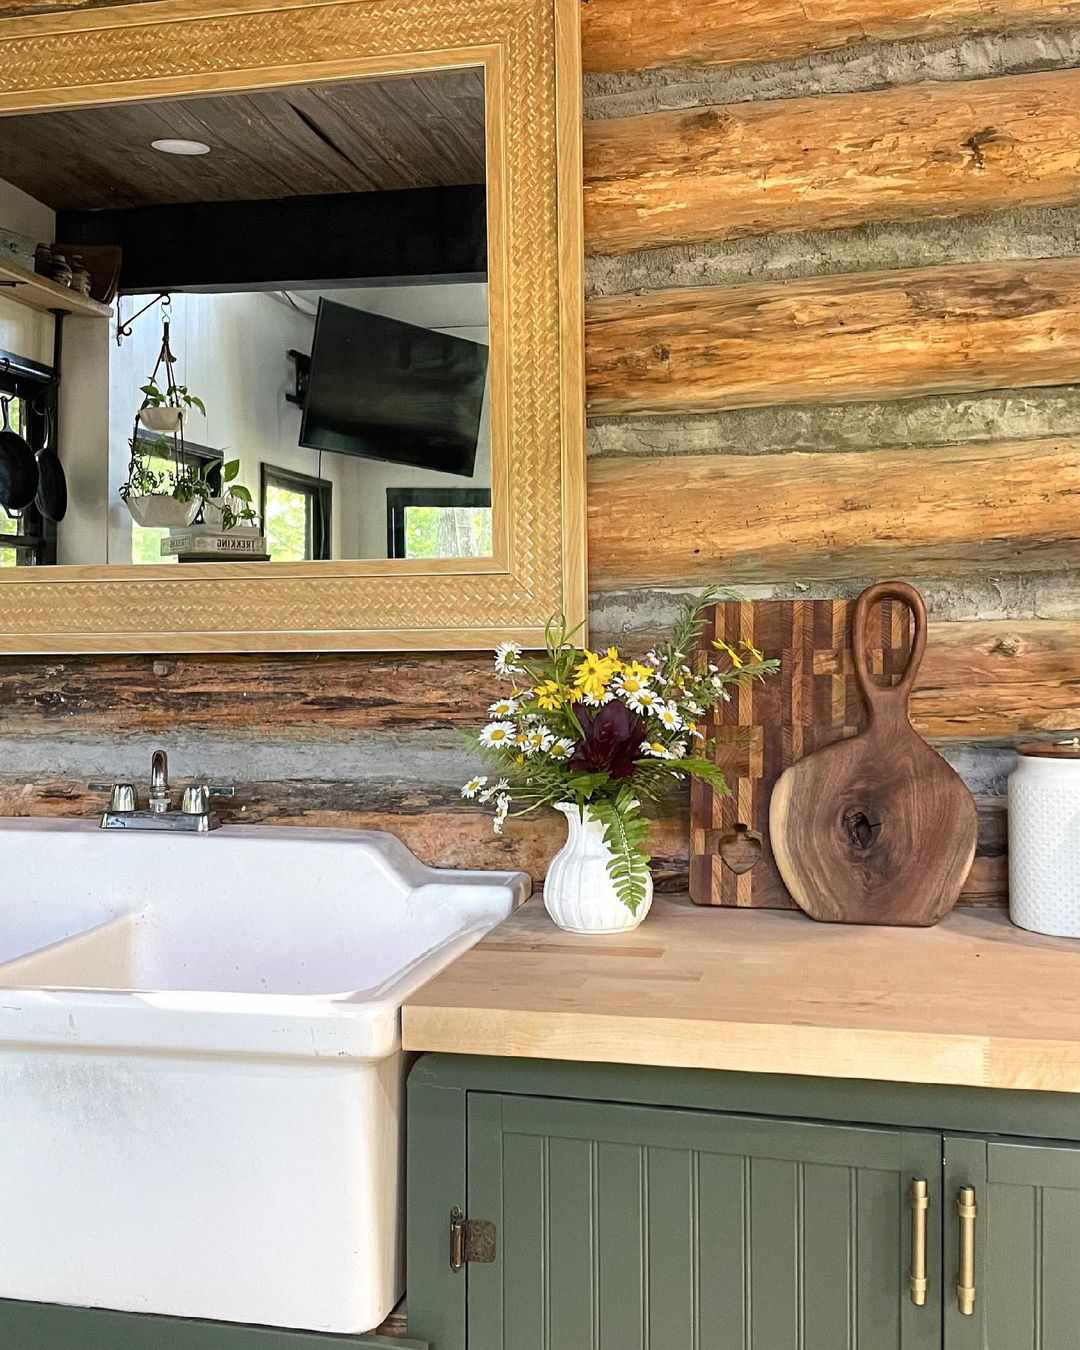 cabine de cozinha com espelho